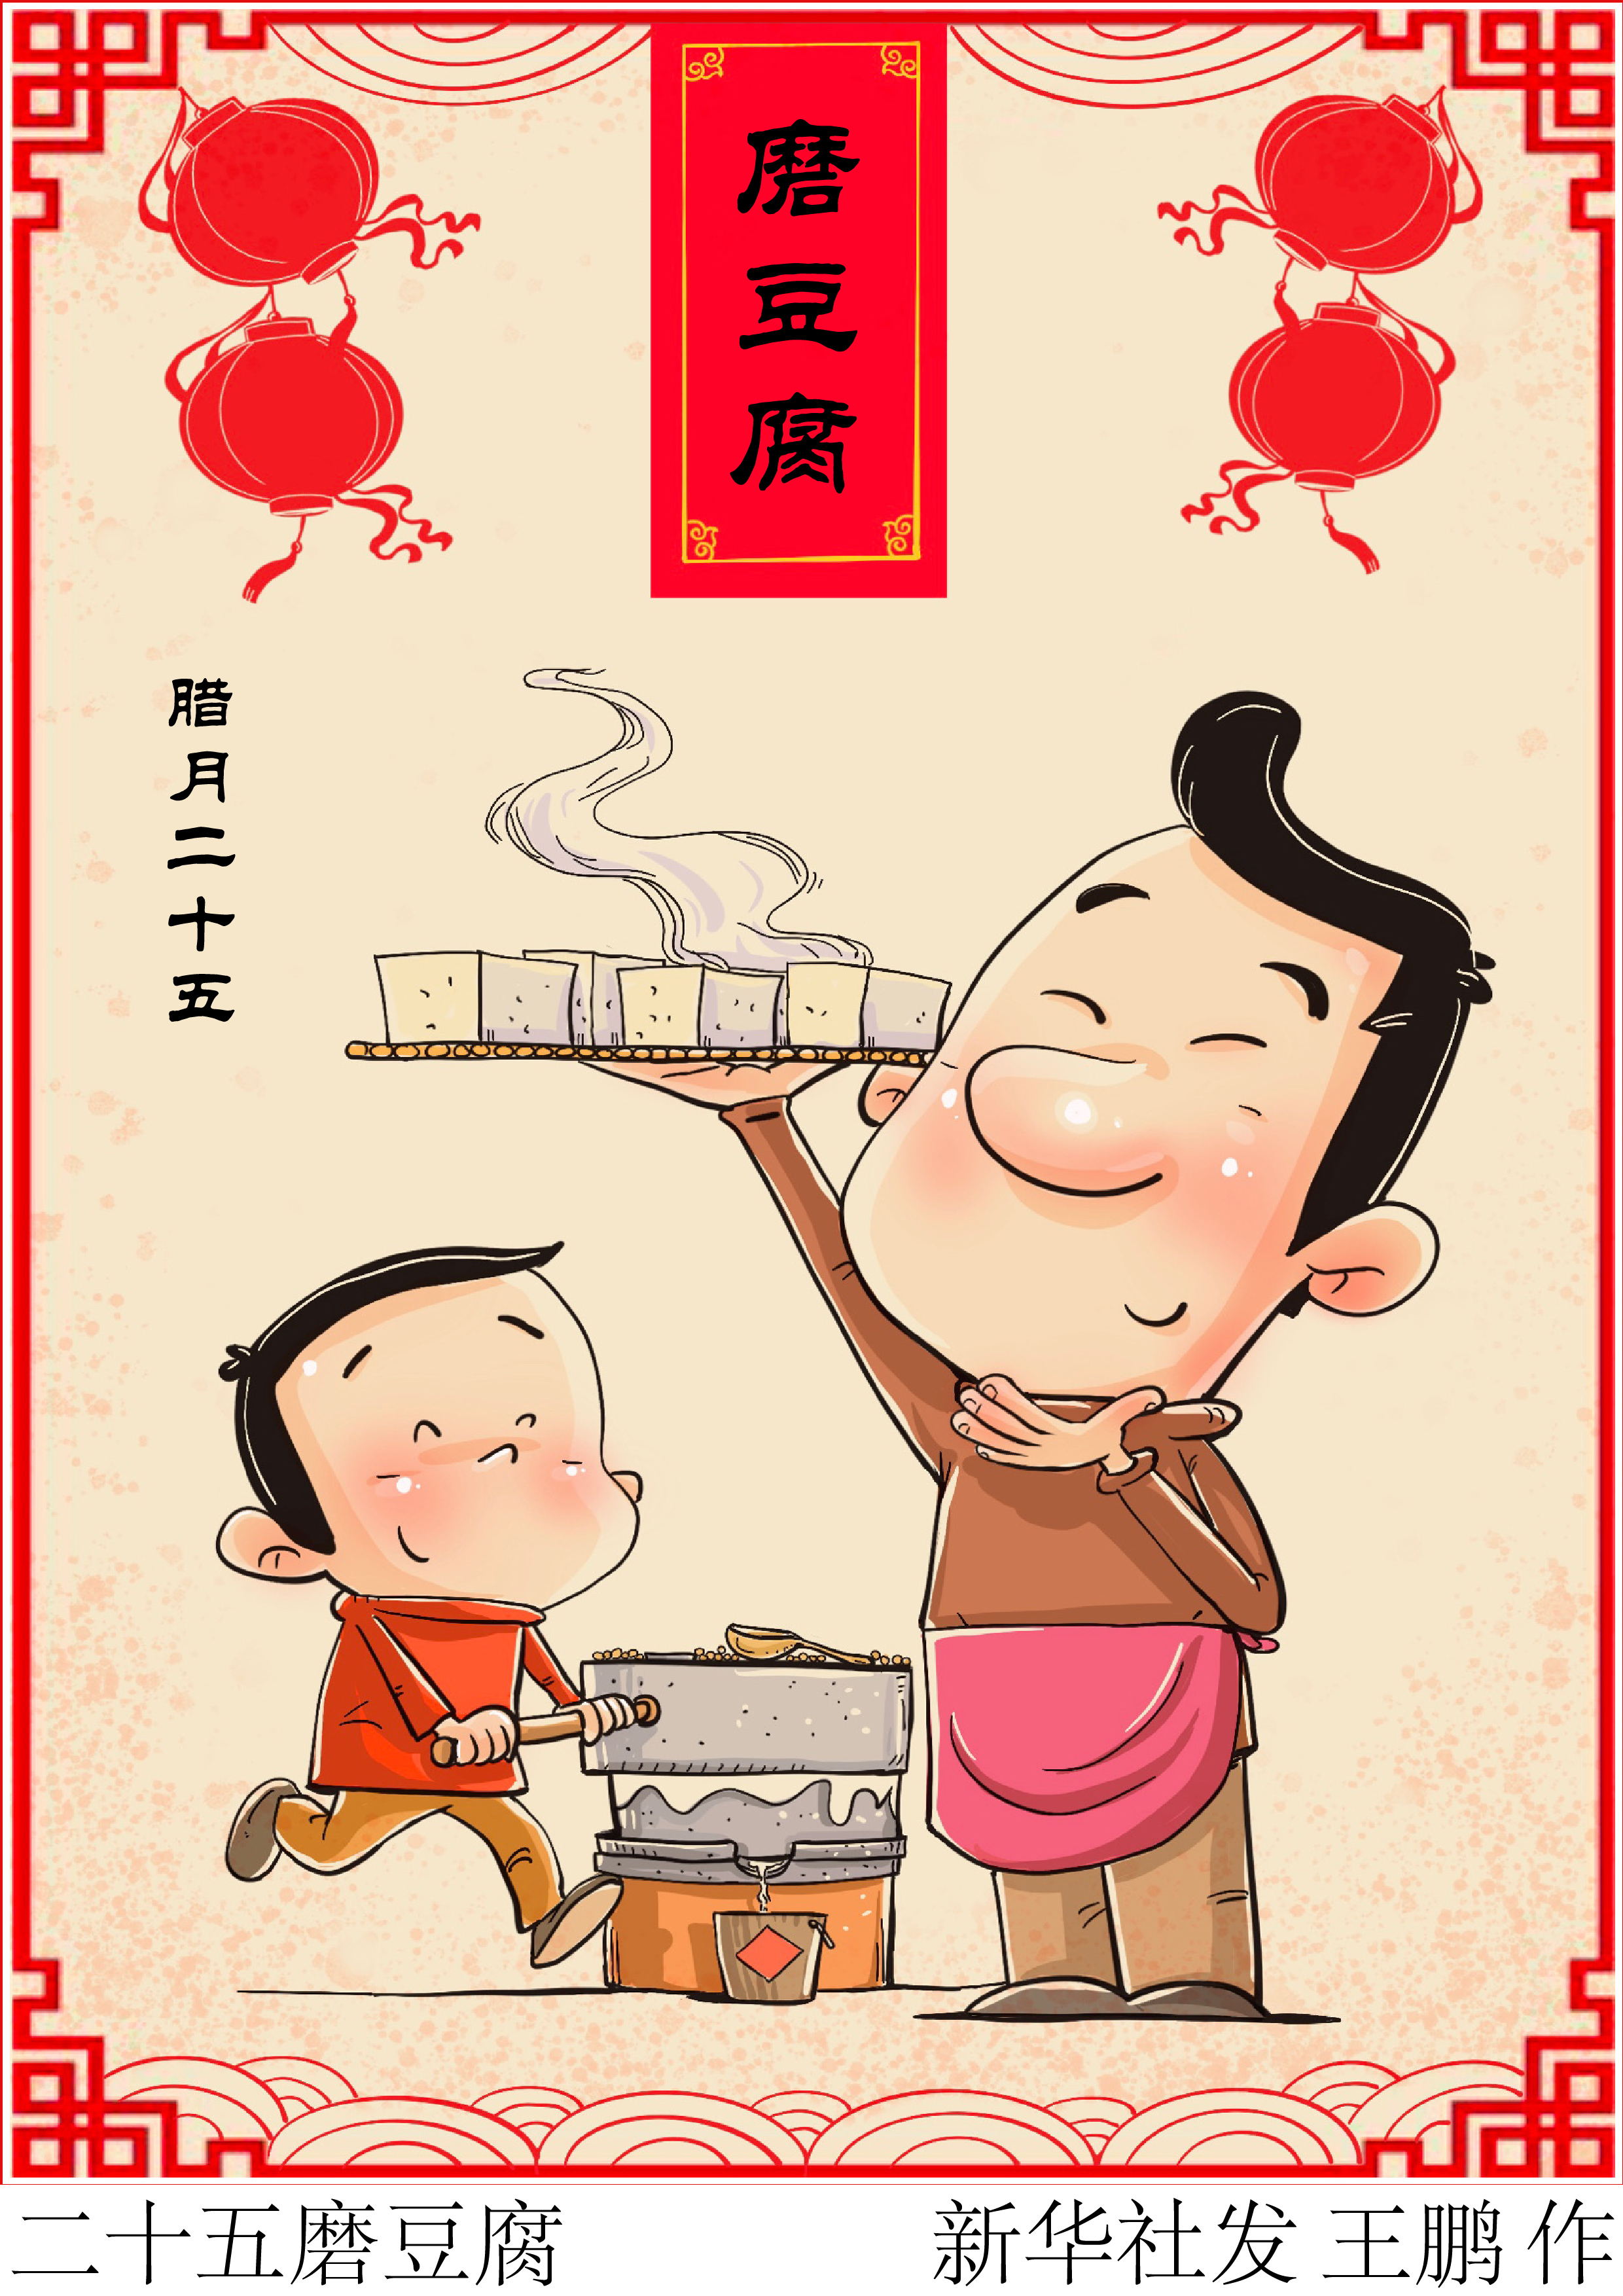 「春节·民俗」二十五磨豆腐